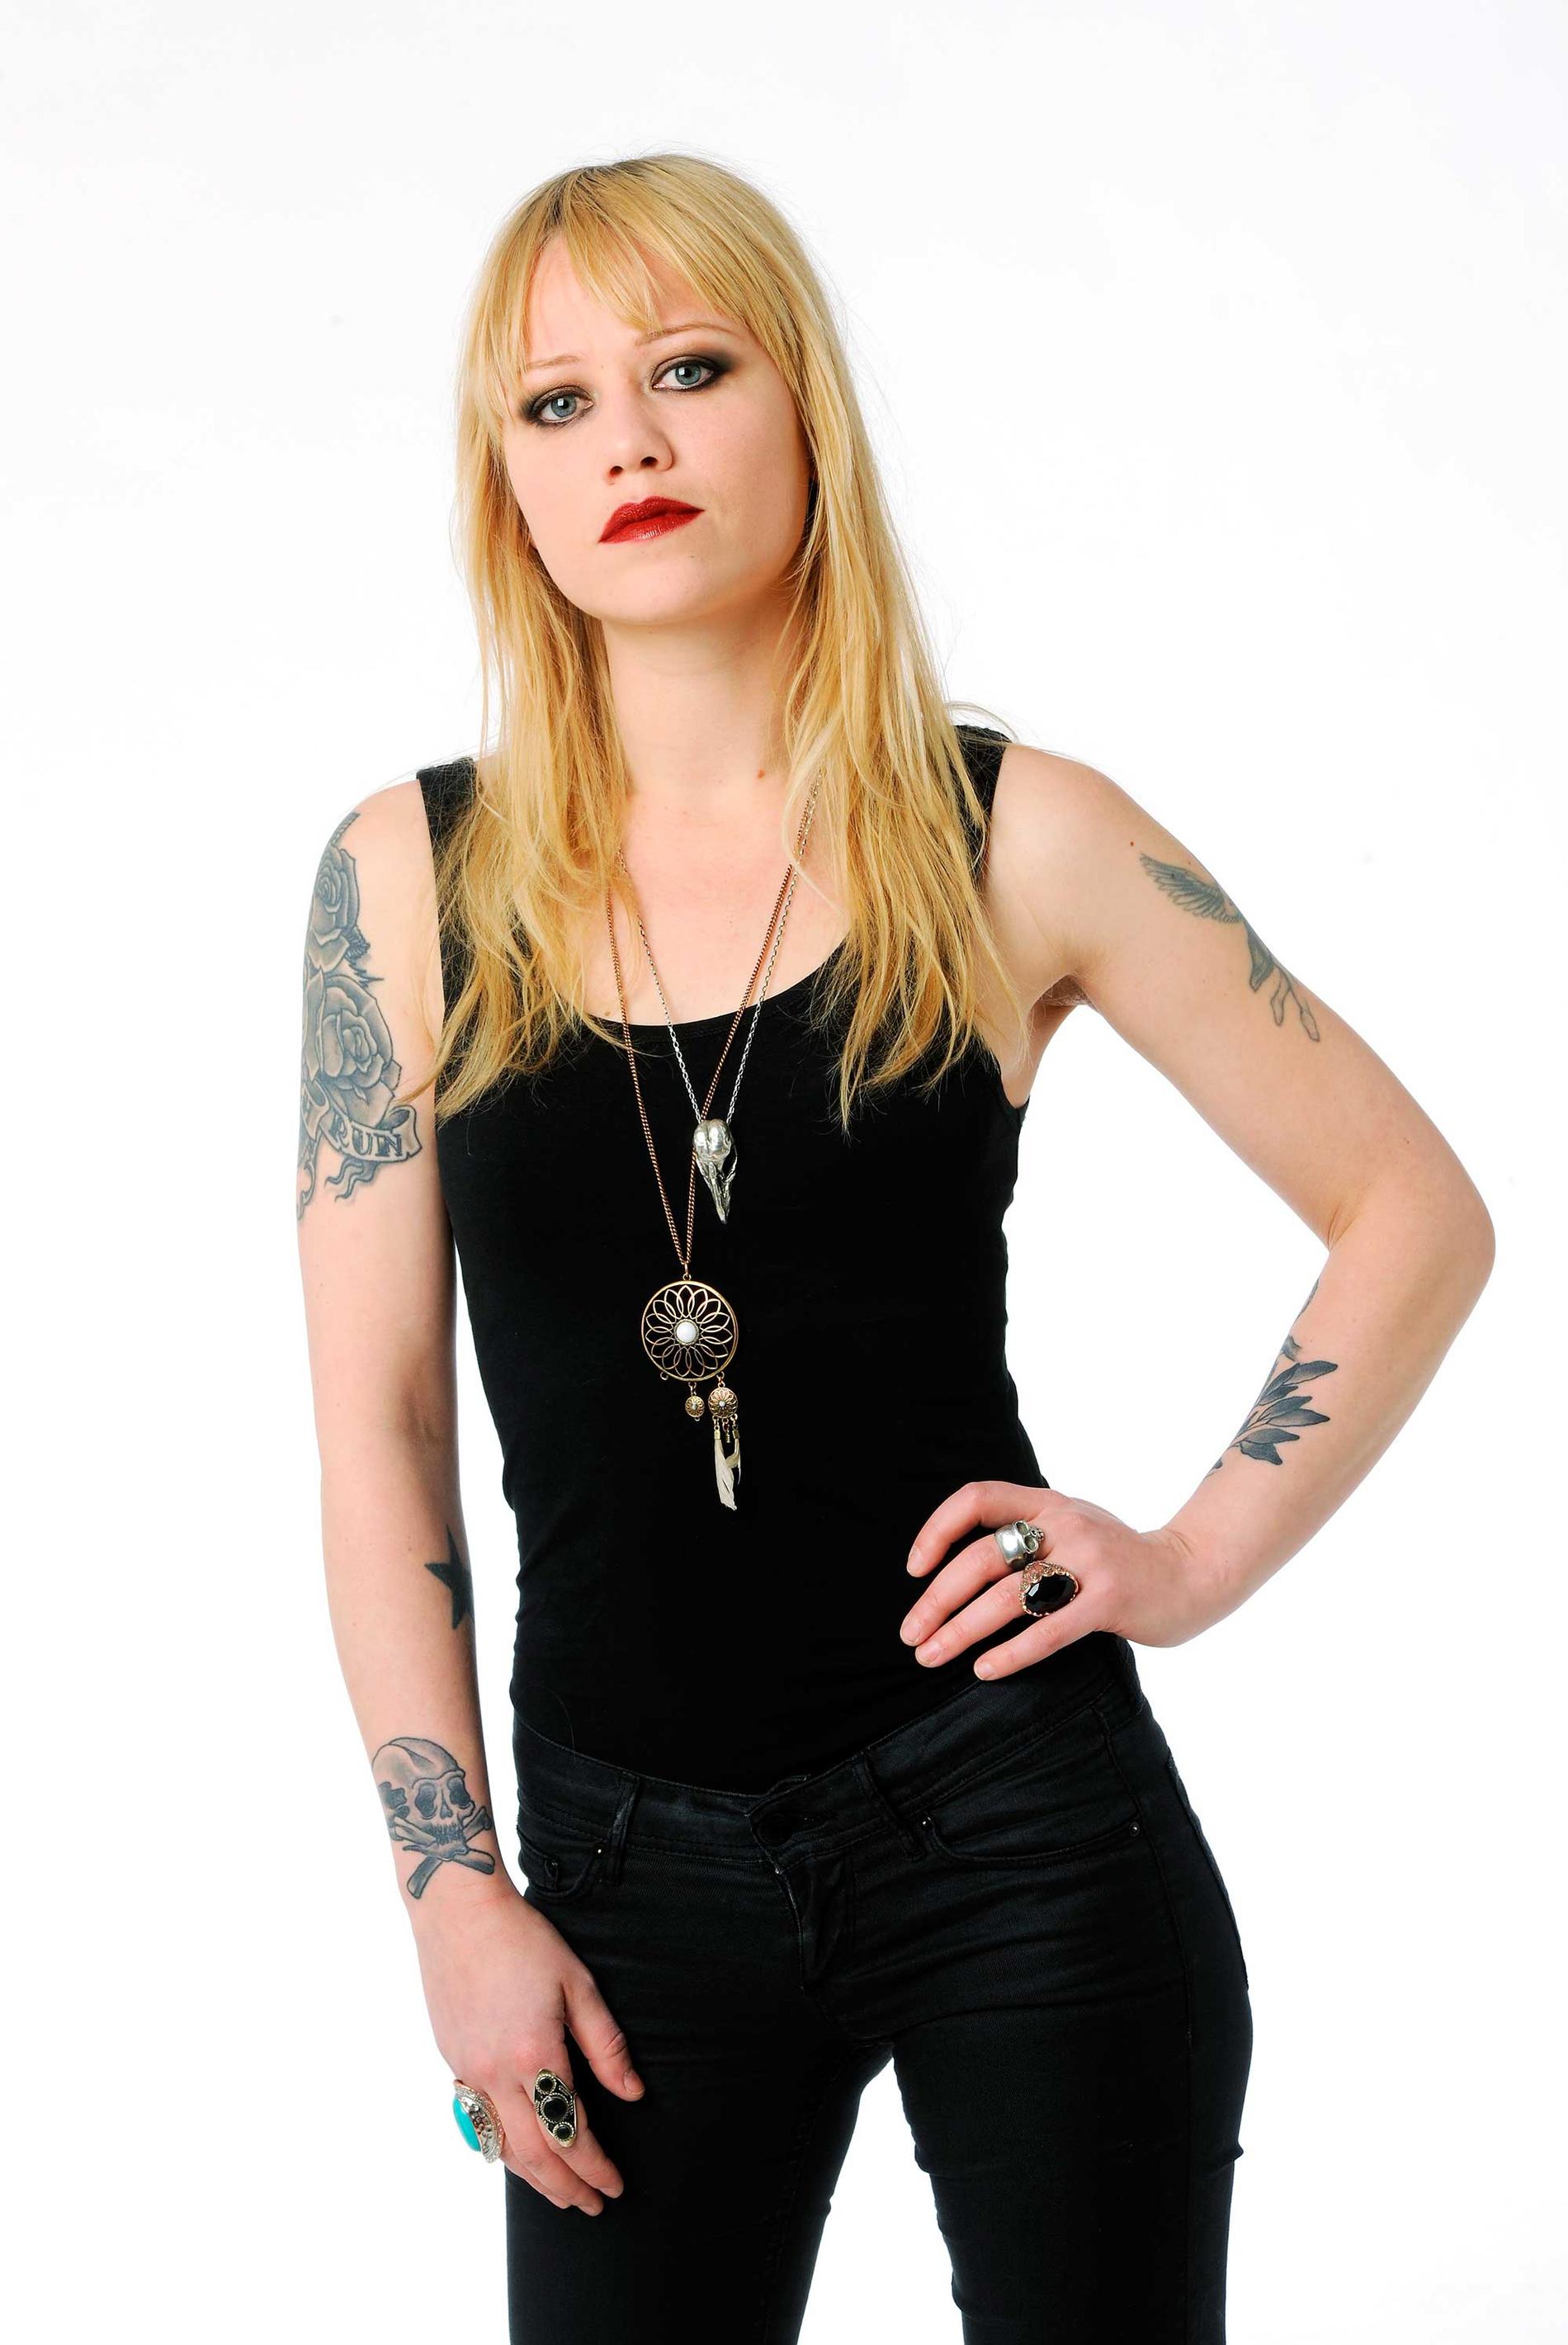 Klara Force är gitarrist i svenska bandet Crusified Barbara och skriver om hårdrock för Nöjesbladet.